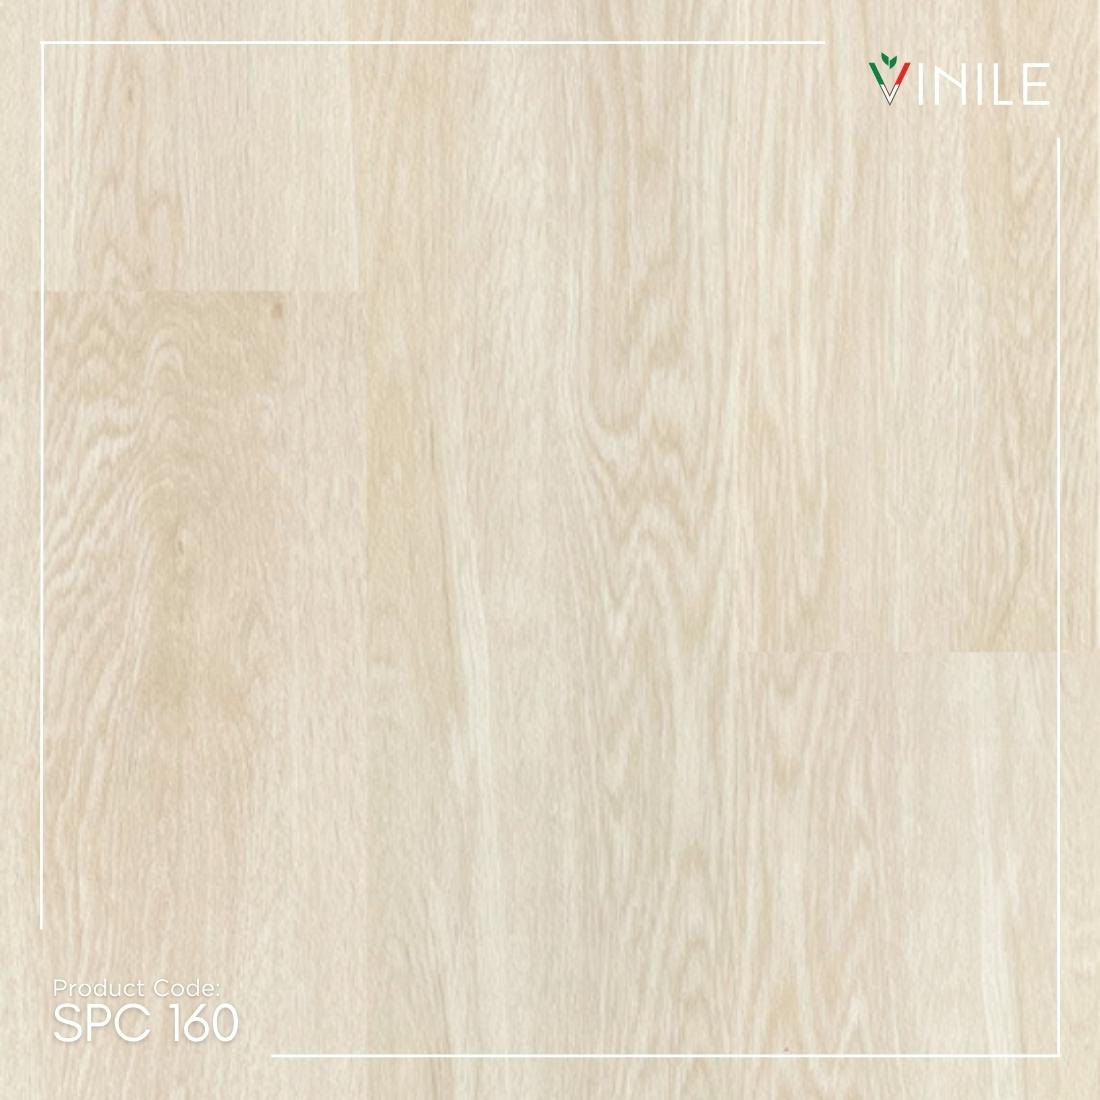 SPC flooring by Vinile Code SPC 160